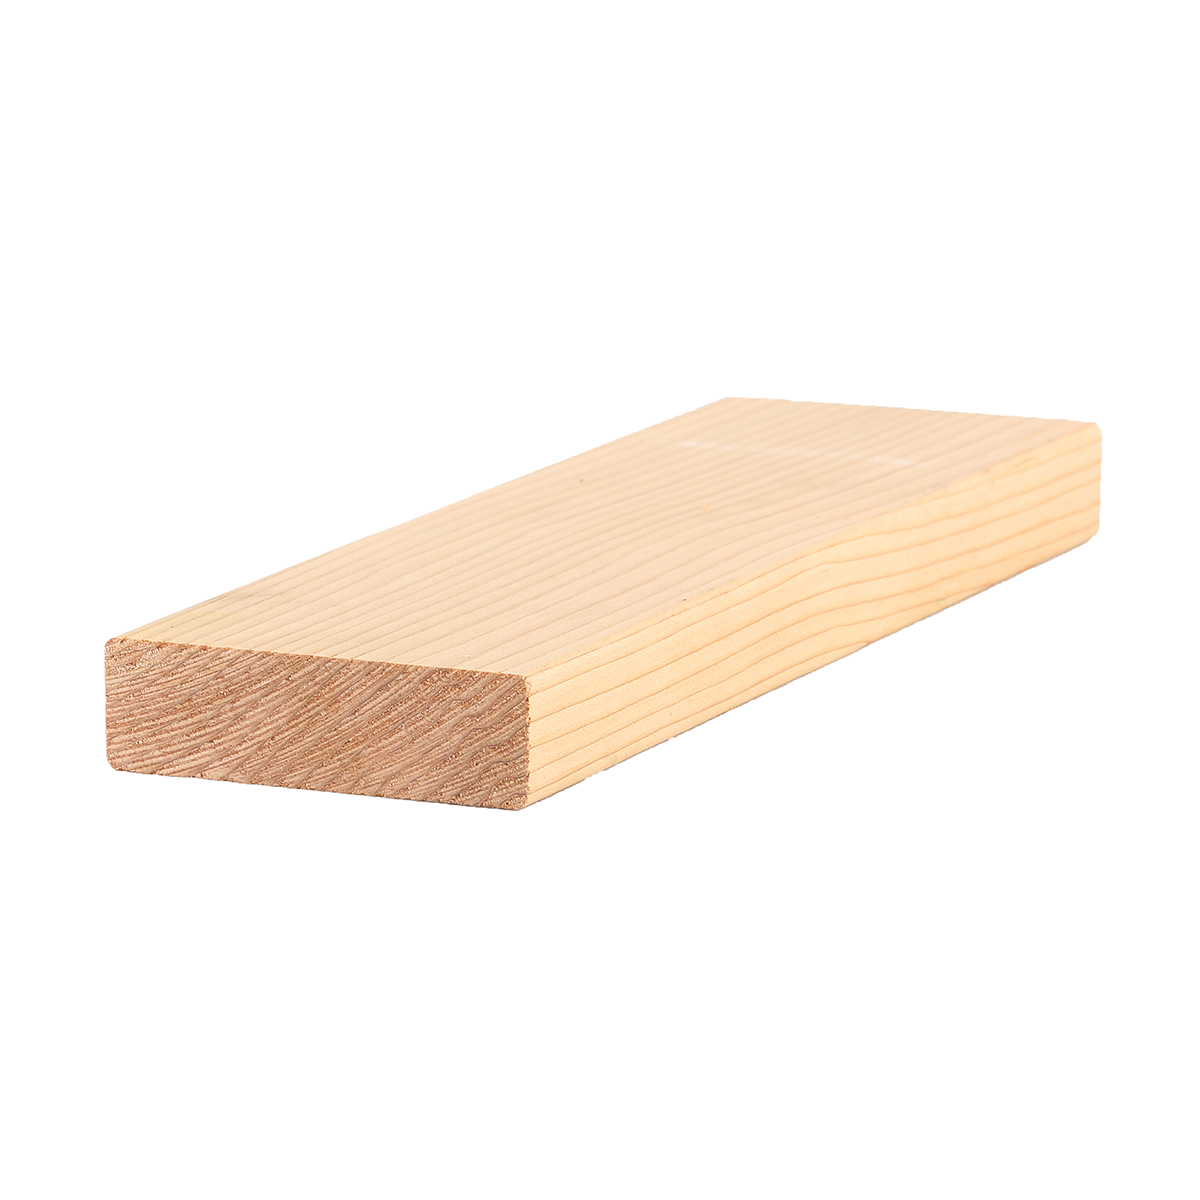 1" x 31/2" Clear Western Red Cedar Lumber 5/4x4